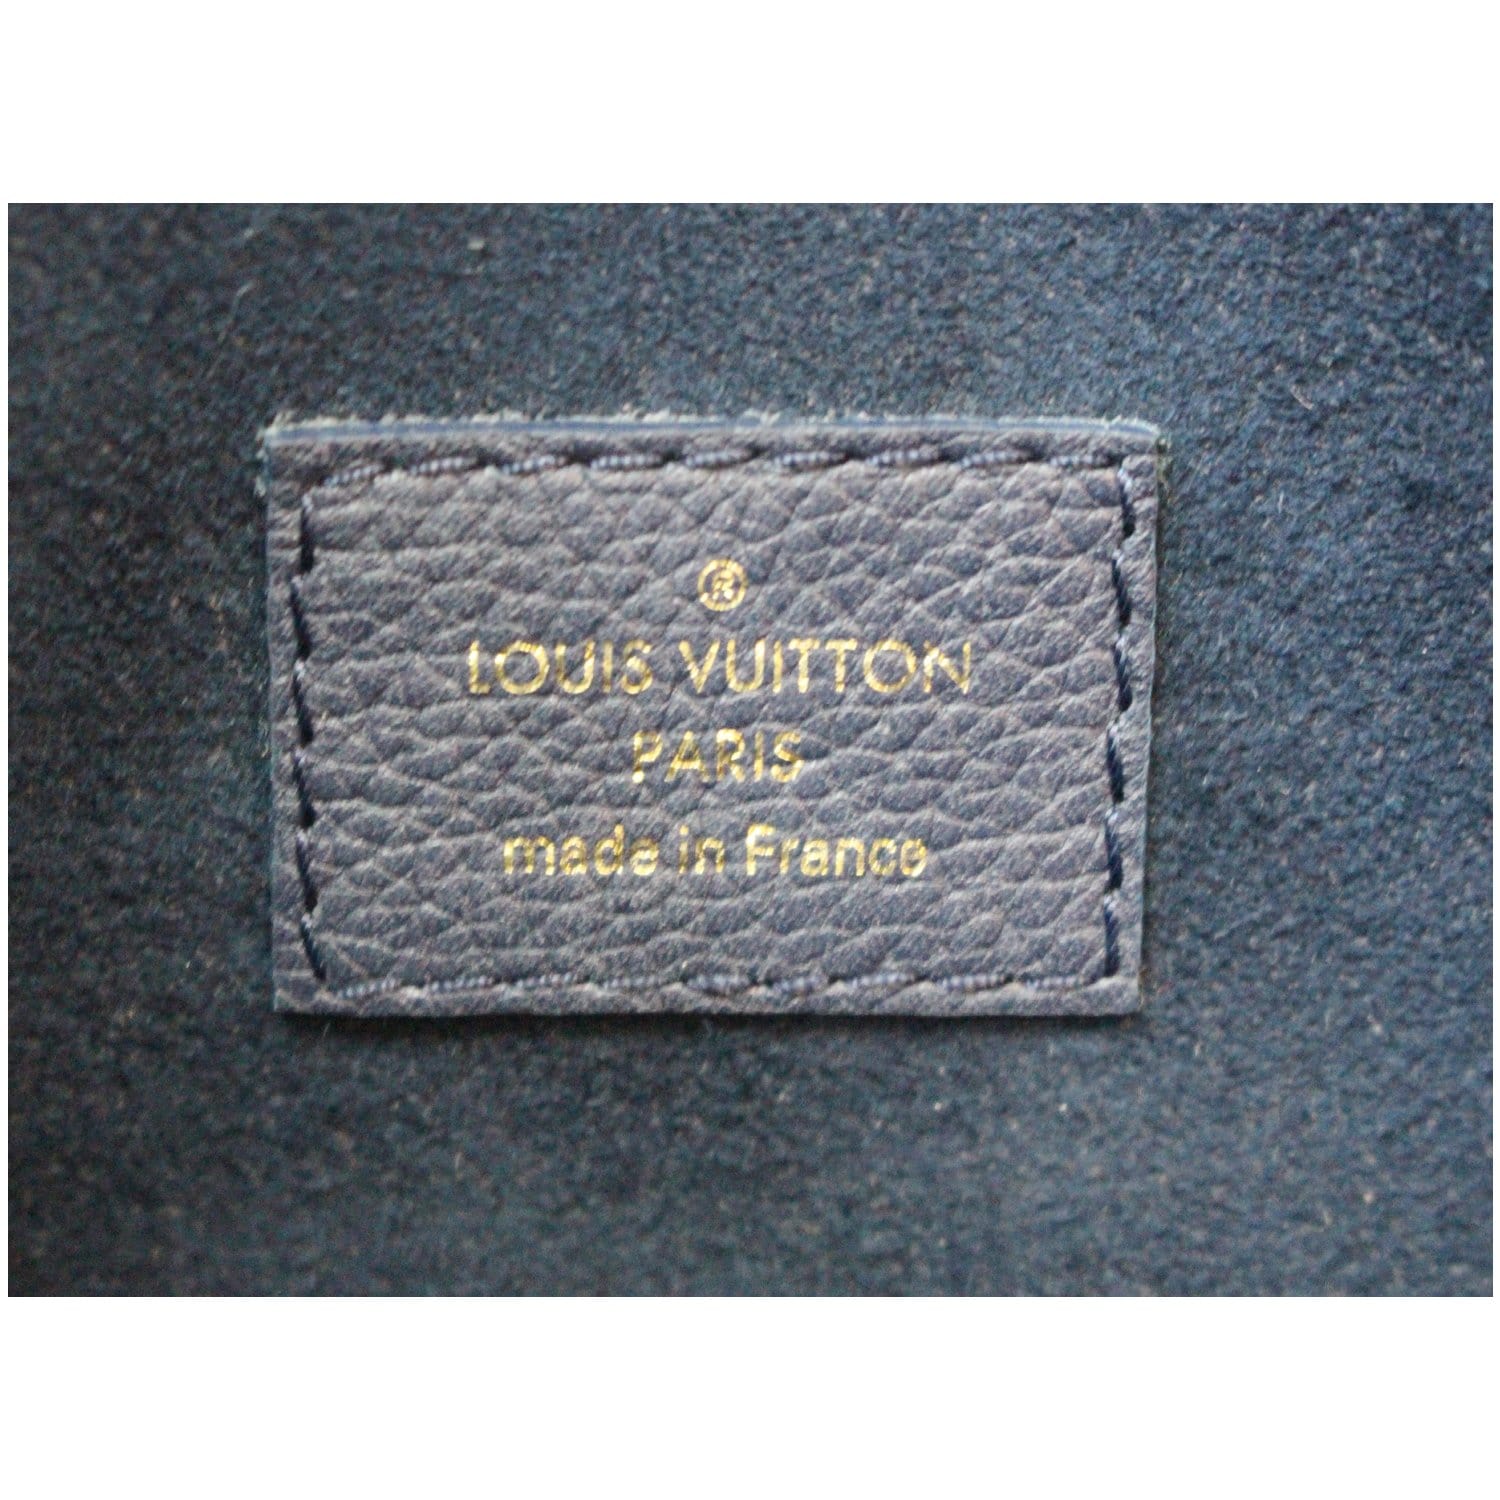 Louis+Vuitton+Victoire+Shoulder+Bag+Medium+Black%2FBrown+Canvas%2FLeather  for sale online